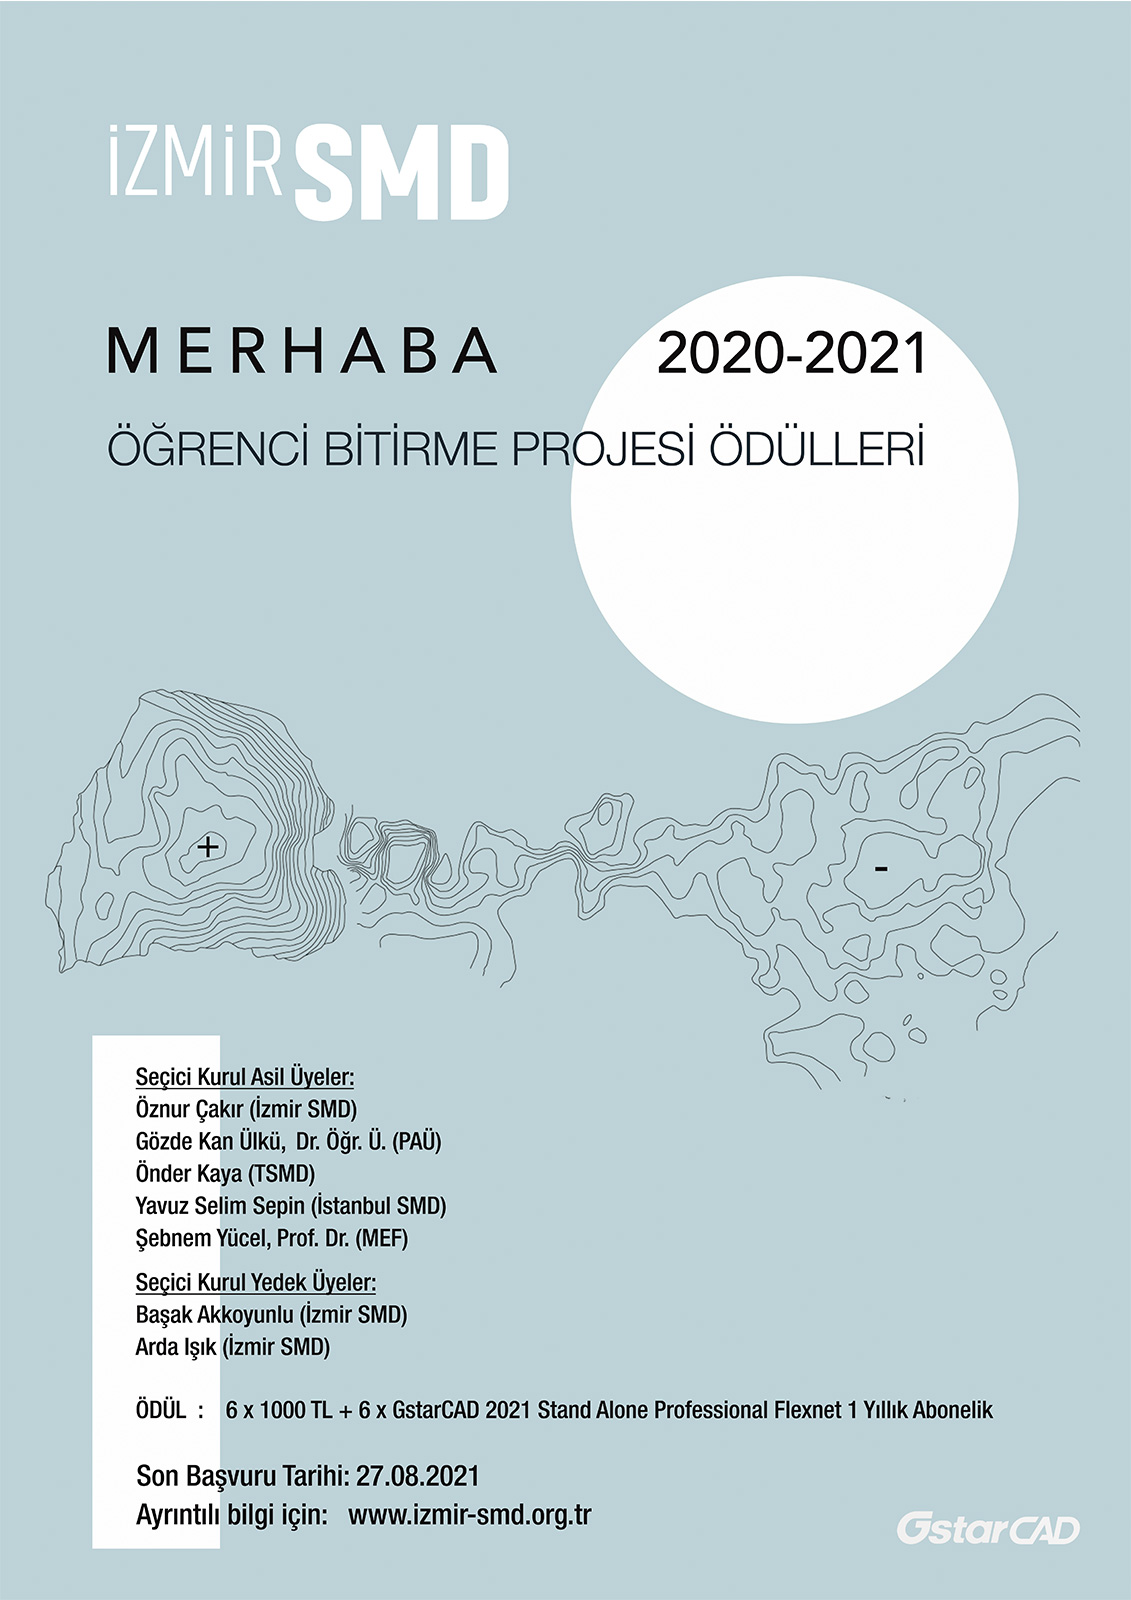 MERHABA - ÖĞRENCİ BİTİRME PROJESİ ÖDÜLLERİ 2020 - 2021